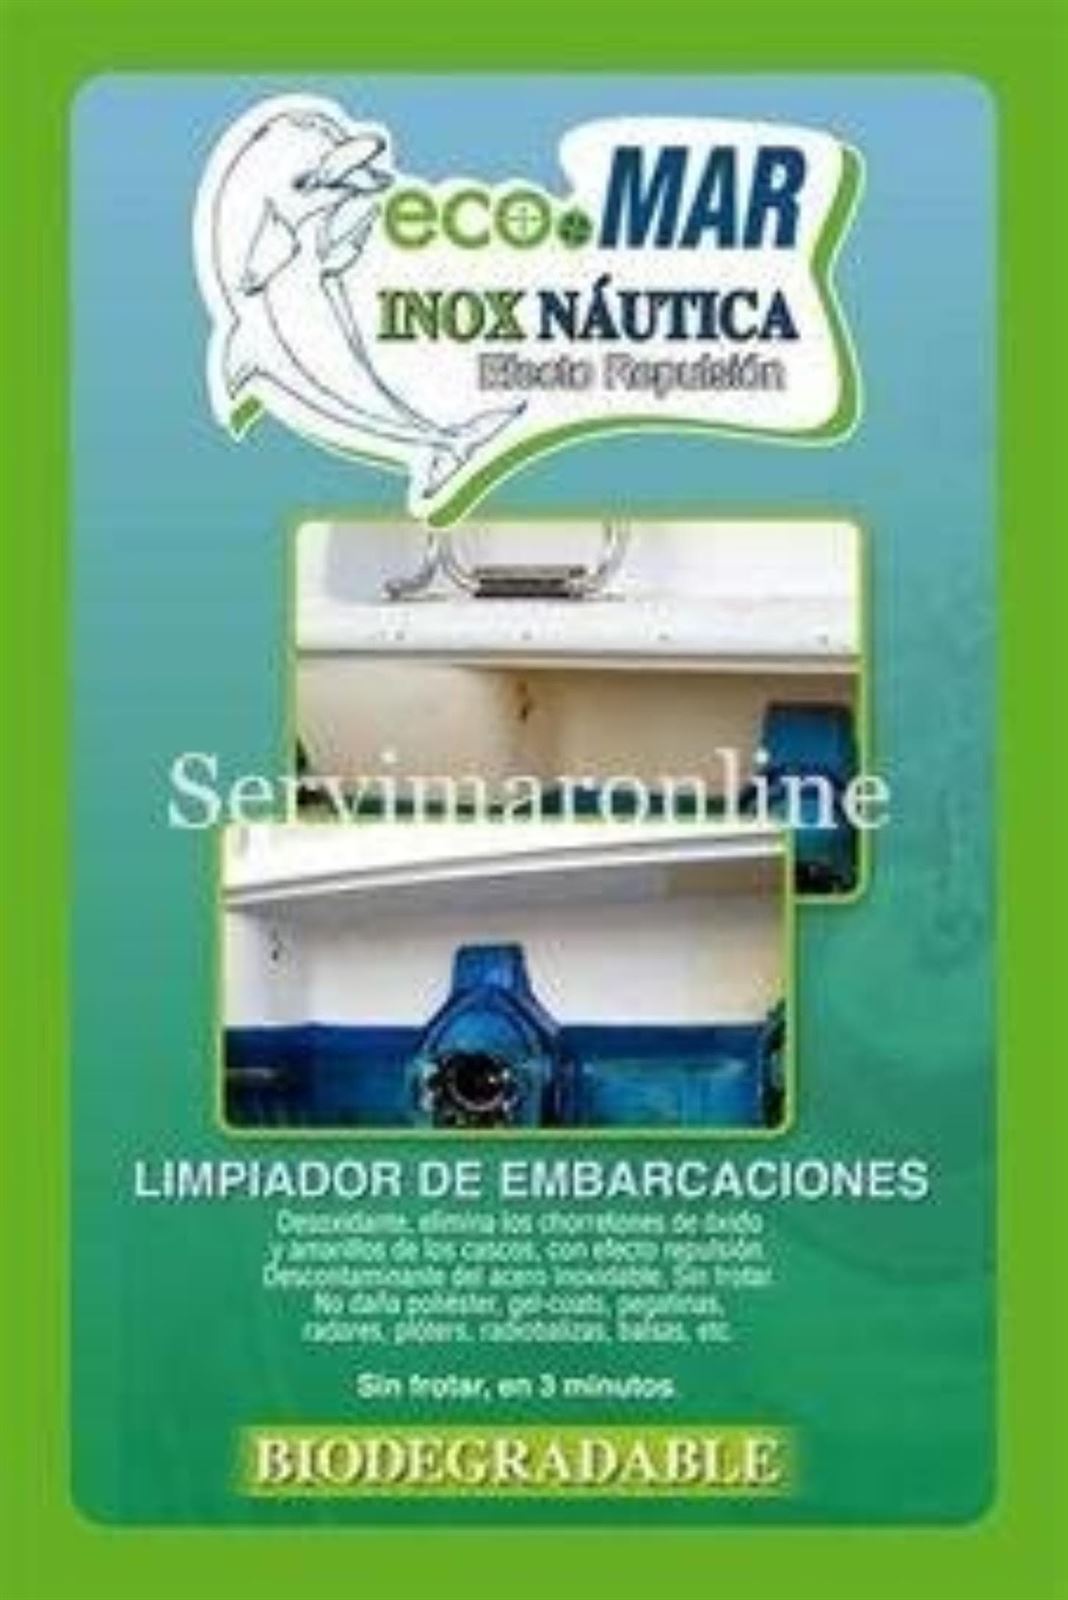 Limpiador INOX NAUTICA para Manchas Amarillas - Imagen 2